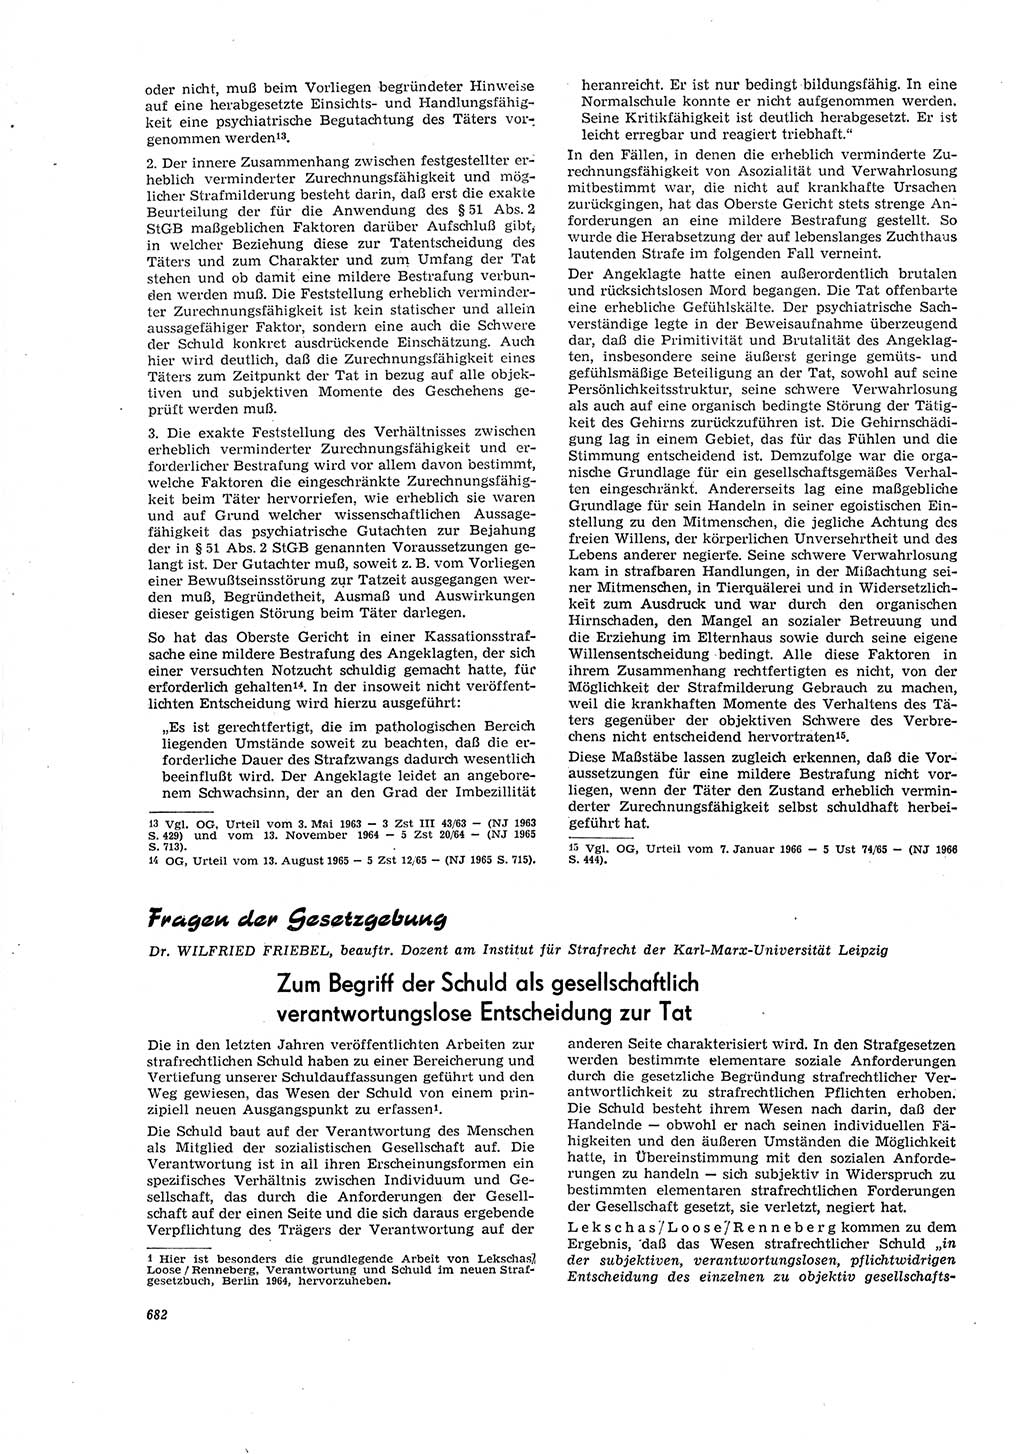 Neue Justiz (NJ), Zeitschrift für Recht und Rechtswissenschaft [Deutsche Demokratische Republik (DDR)], 20. Jahrgang 1966, Seite 682 (NJ DDR 1966, S. 682)